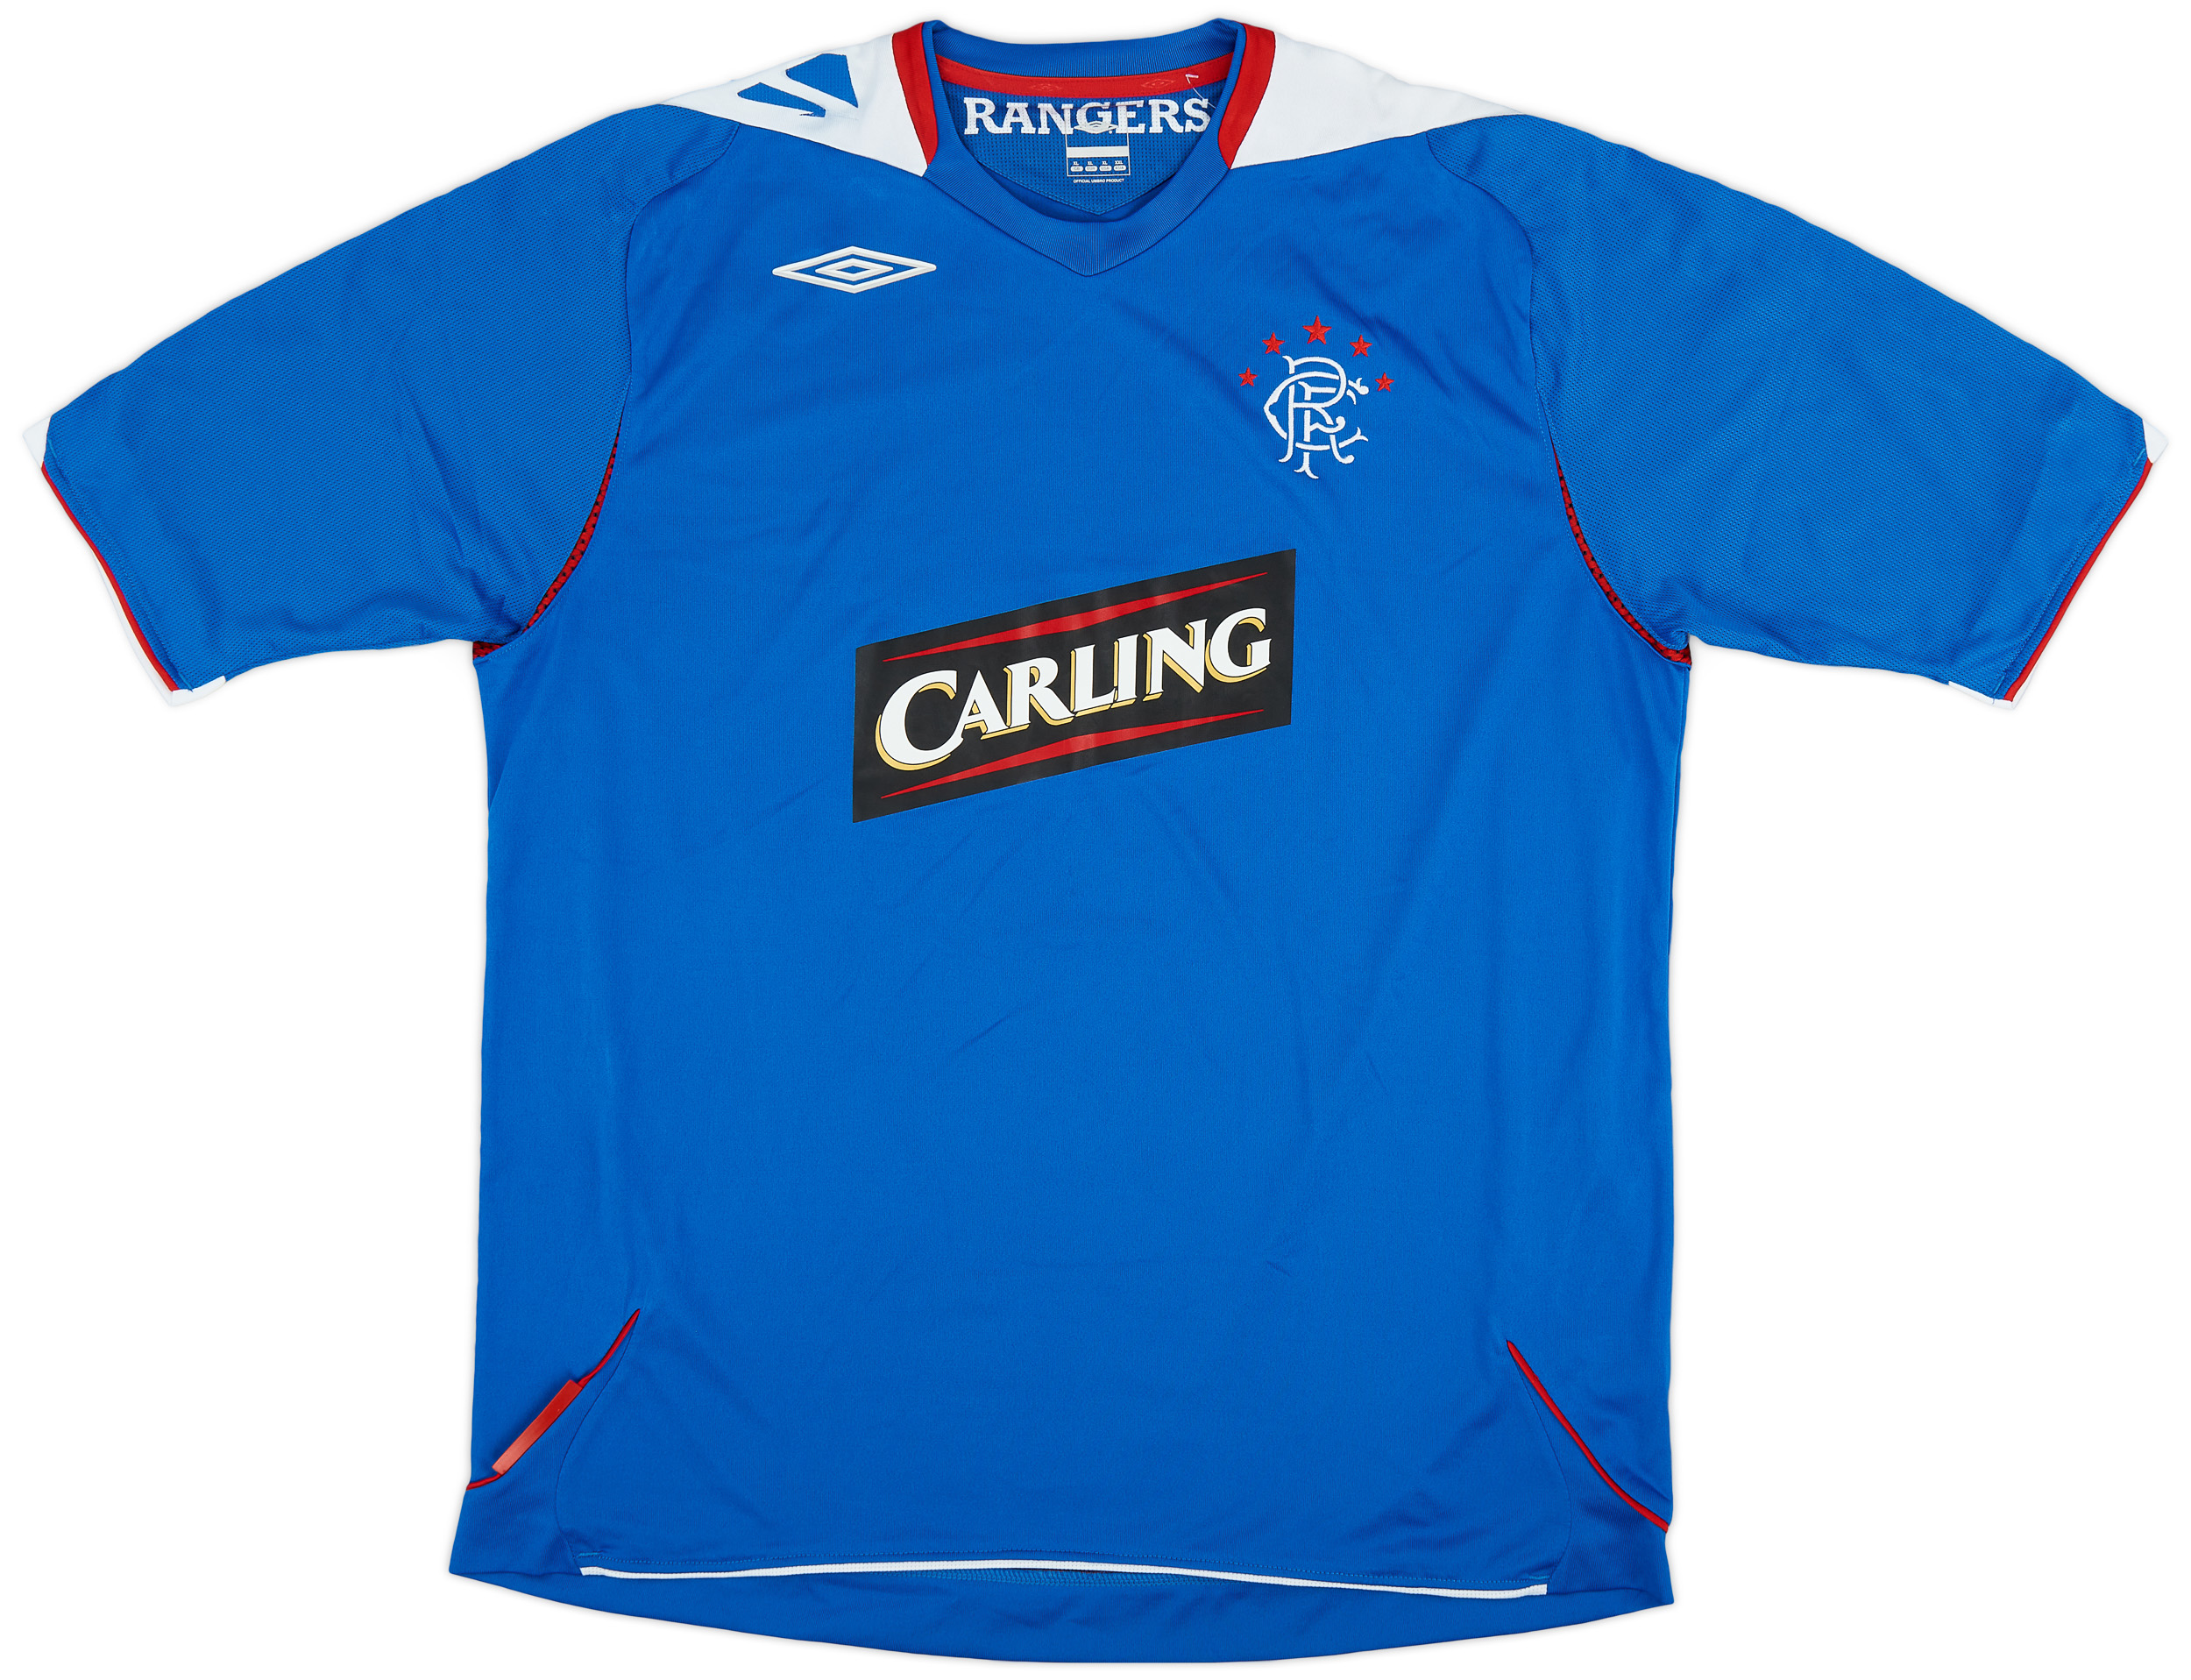 2006-07 Rangers Home Shirt - 6/10 - ()